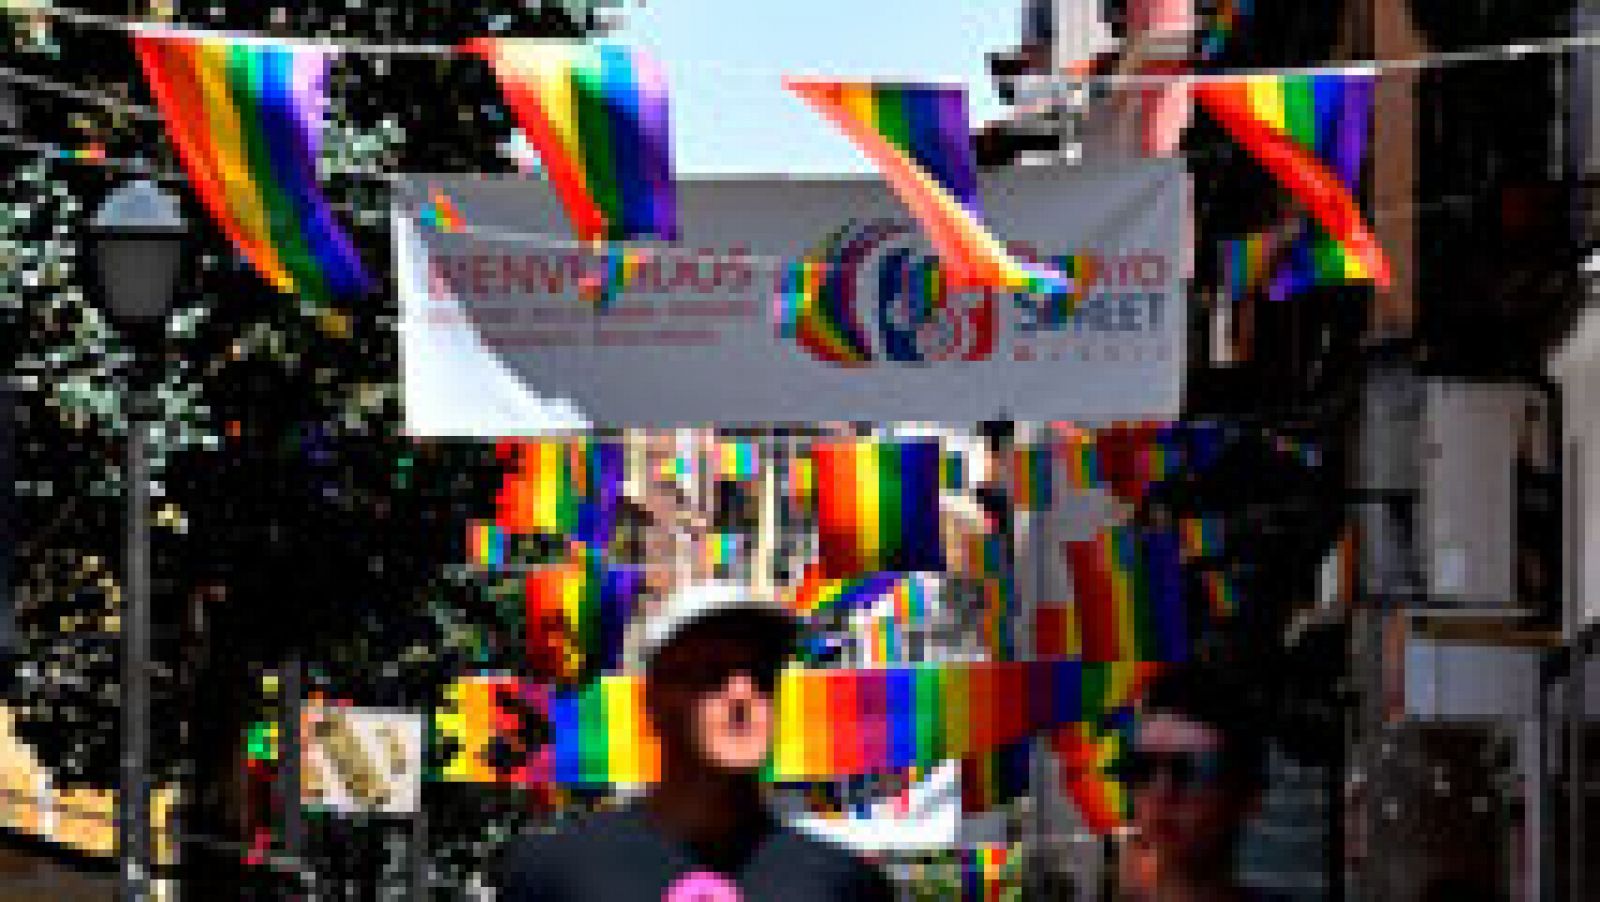 Telediario 1: La plaza Pedro Zerolo será testigo del pregón del Orgullo que dará el pistoletazo de salida al World Pride | RTVE Play